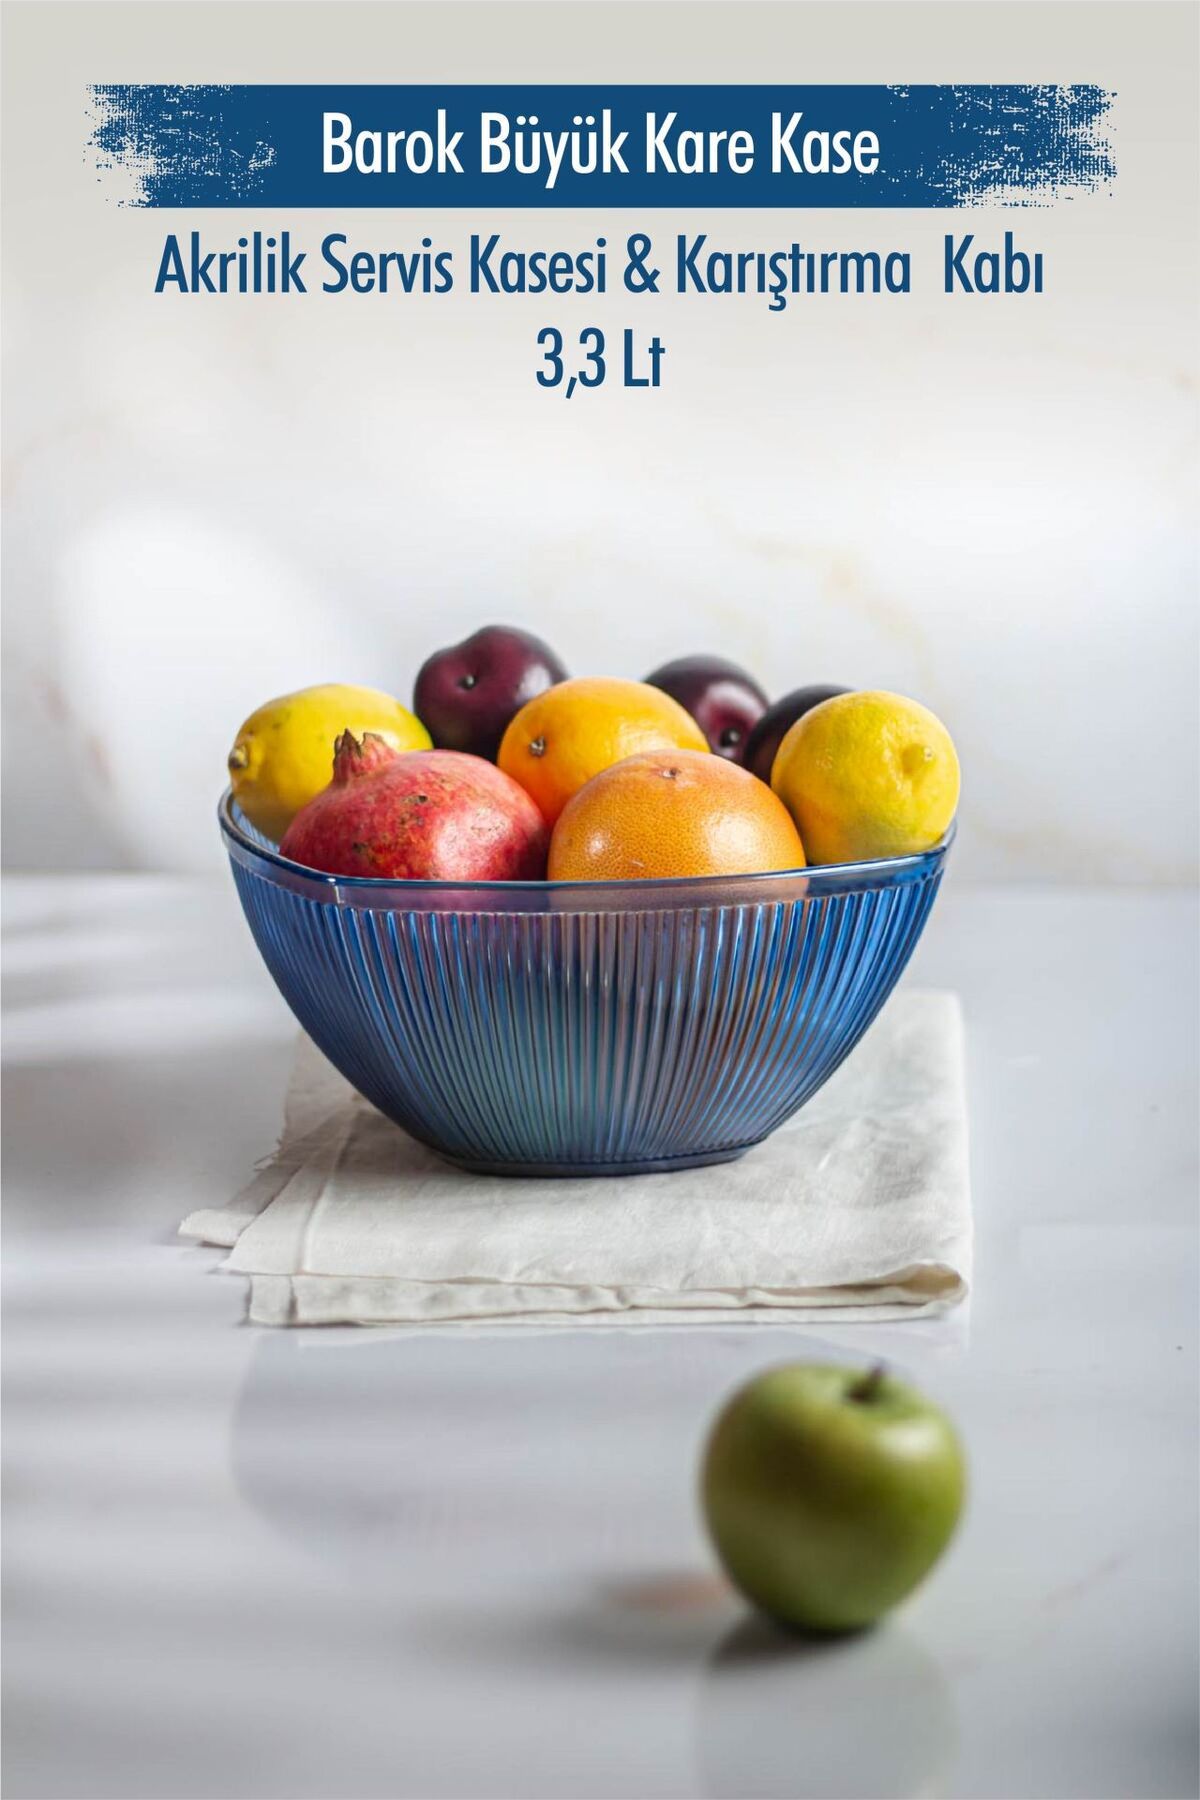 Genel Markalar Akrilik Barok Lacivert Büyük Kare Meyve & Salata Kasesi & Karıştırma Kabı / 3,3 Lt  (CAM DEĞİLDİR)